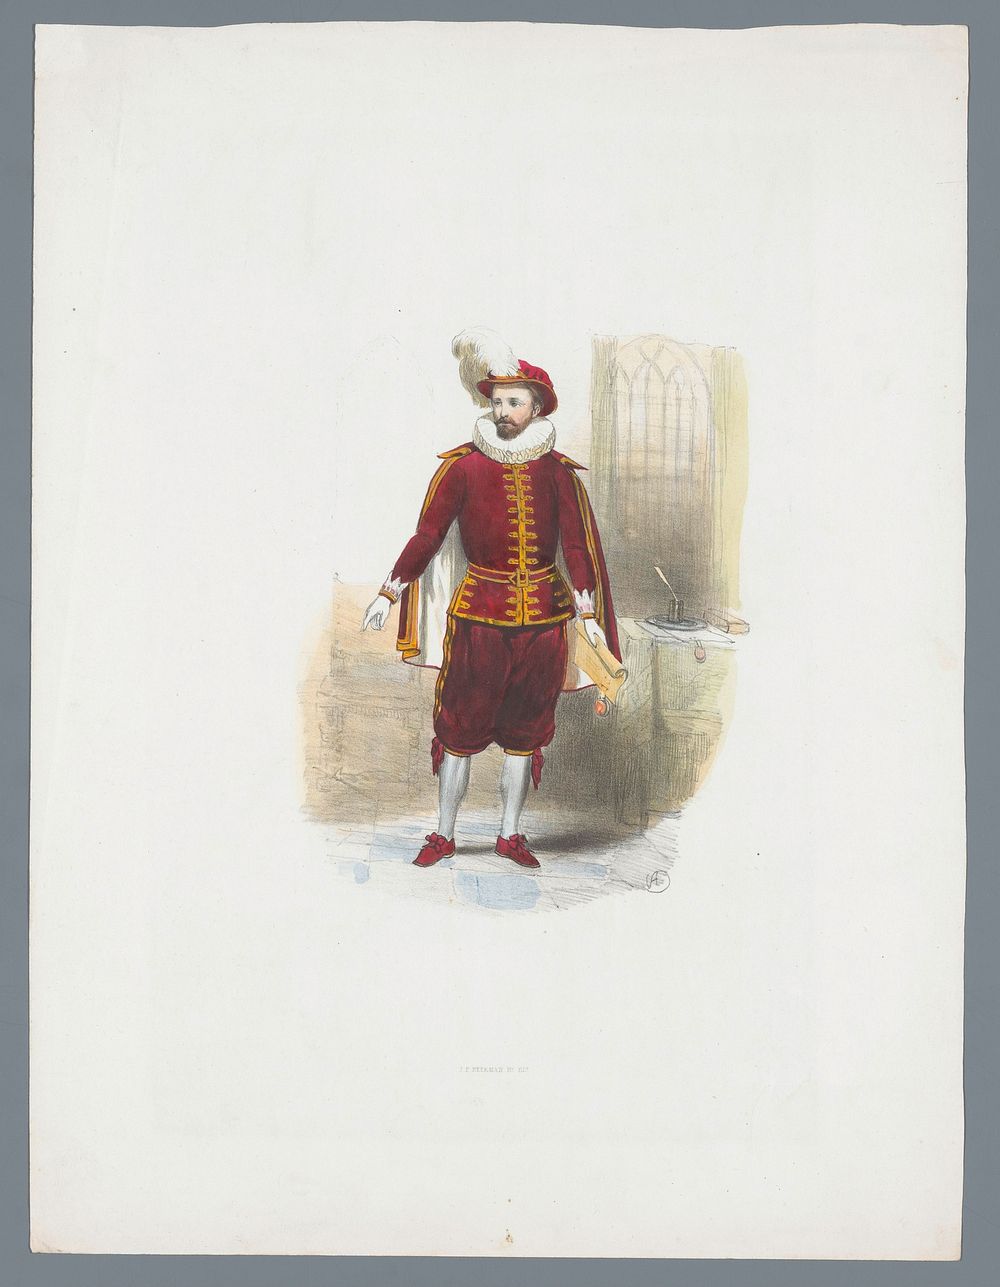 Man in historisch kostuum (1841) by Huib van Hove Bz and J P Beekman Hzn